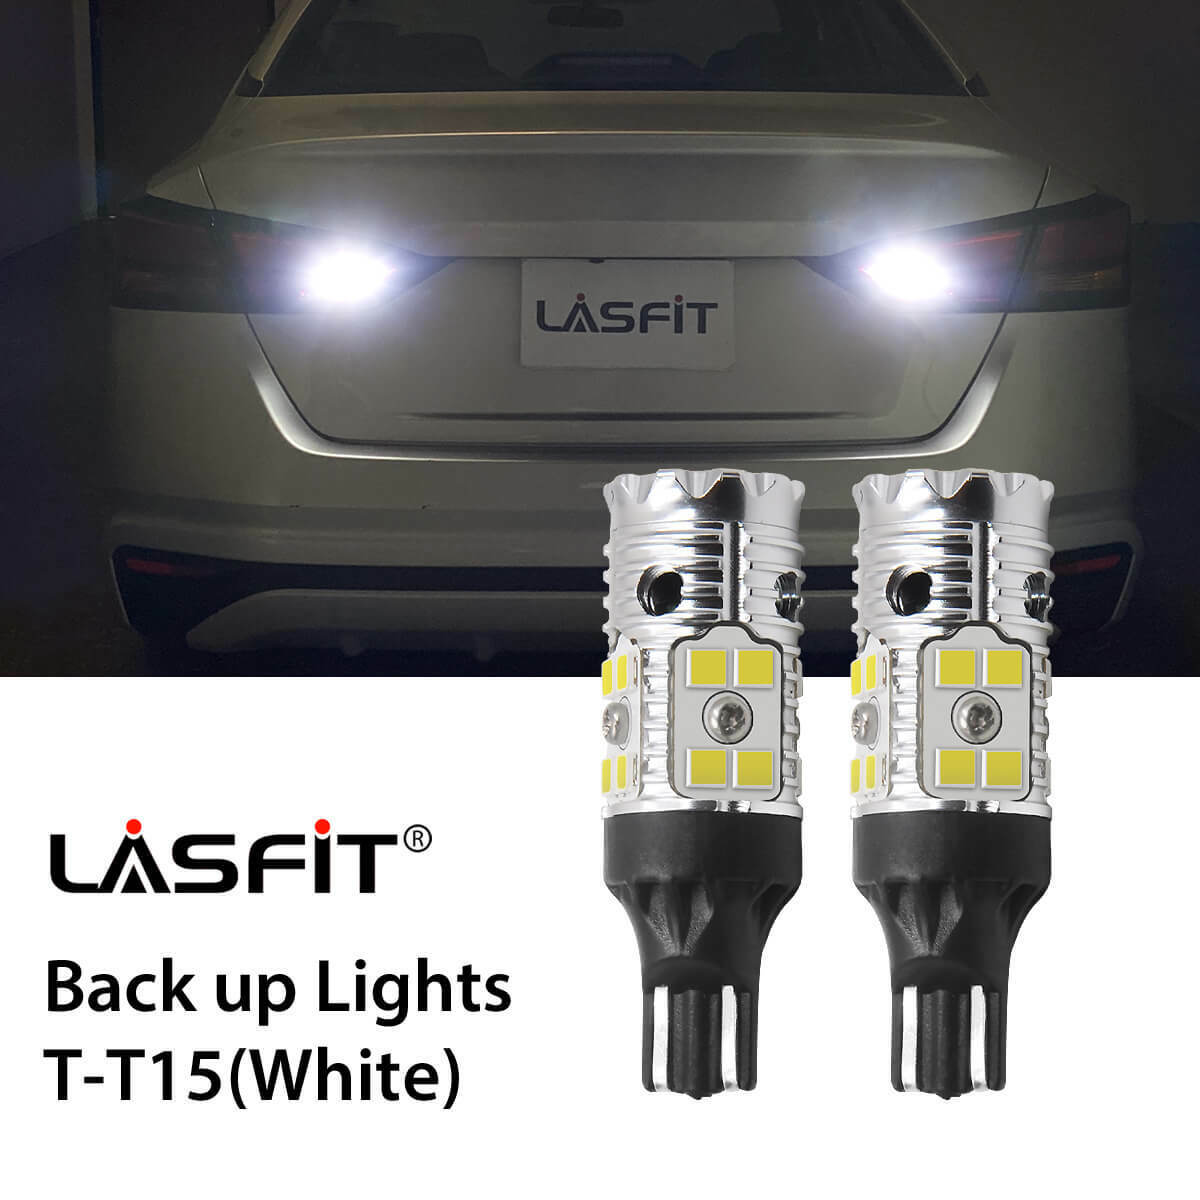 LASFIT LED Backup Reverse Light Bulbs 921 912 T15 Super Bright Canbus Error Free